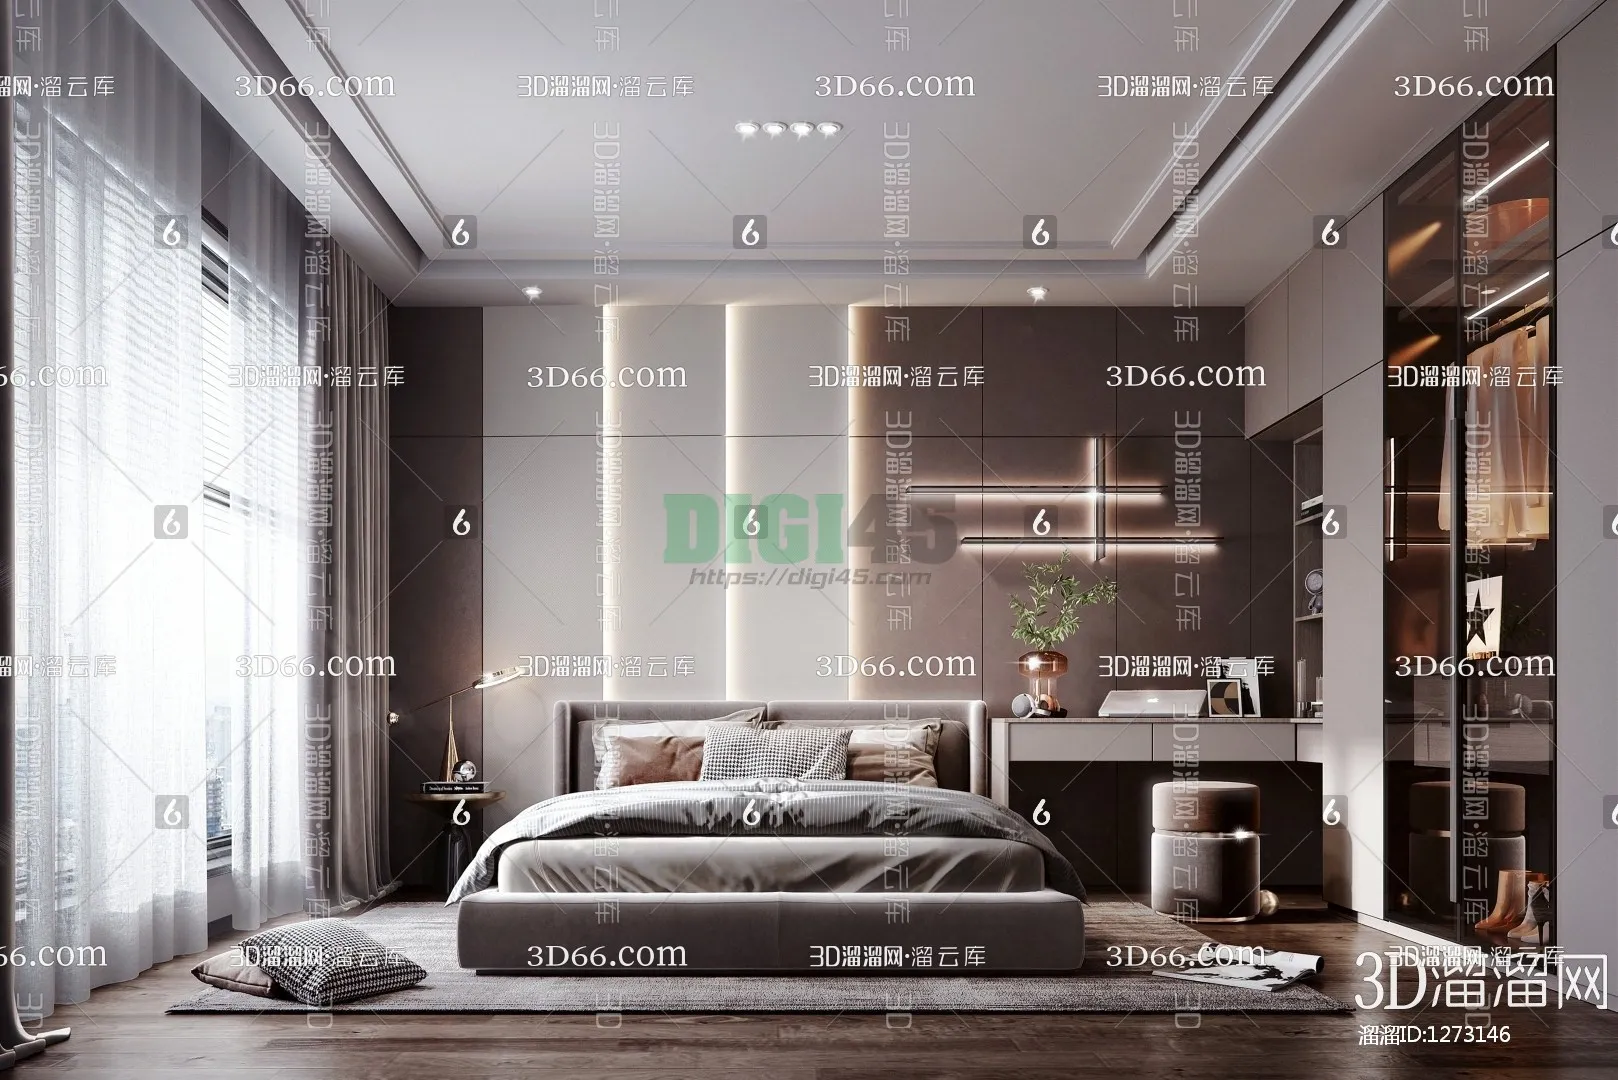 Bedroom 3D Scenes – 1131